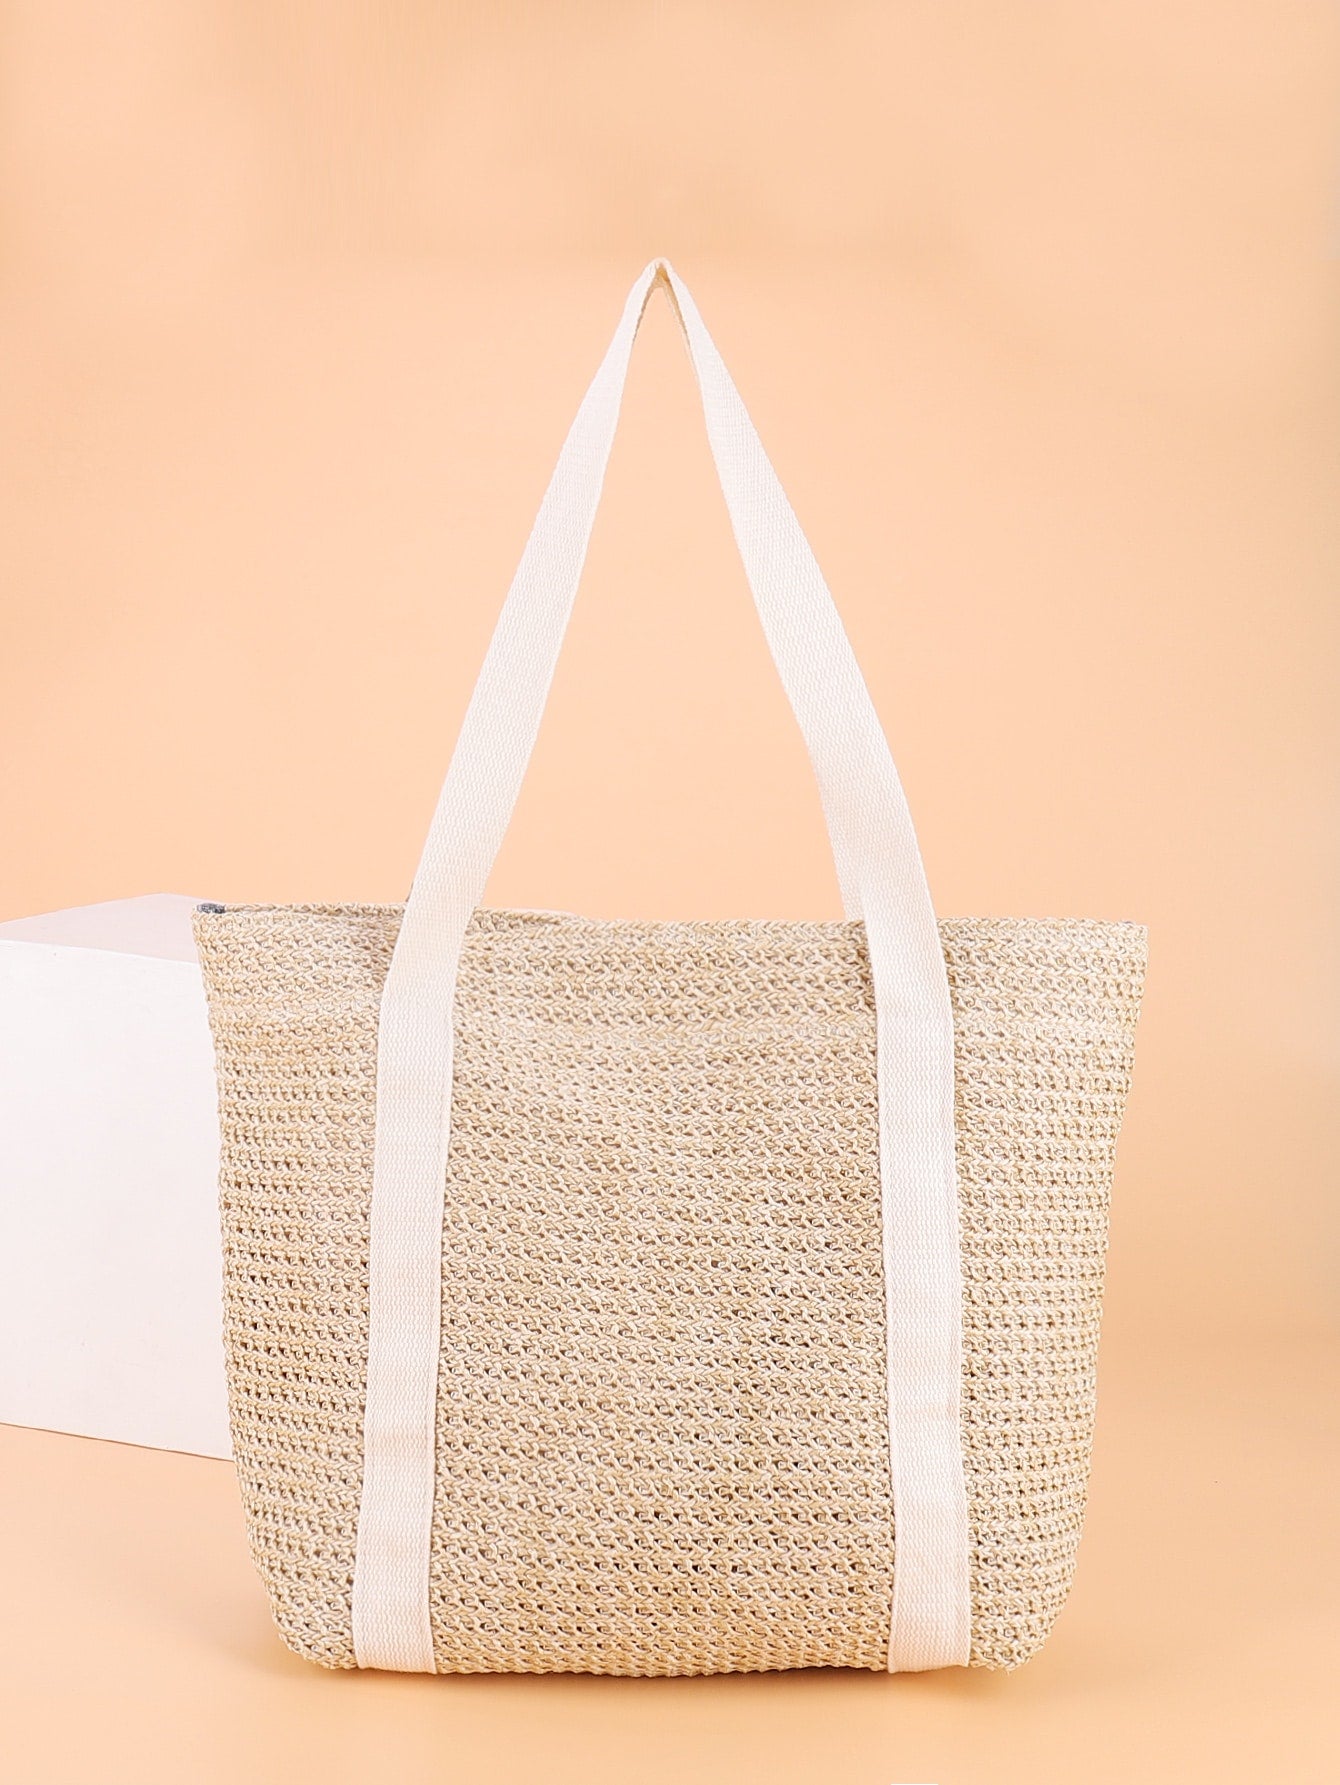 Scarf Decor Straw Design Shoulder Tote Bag